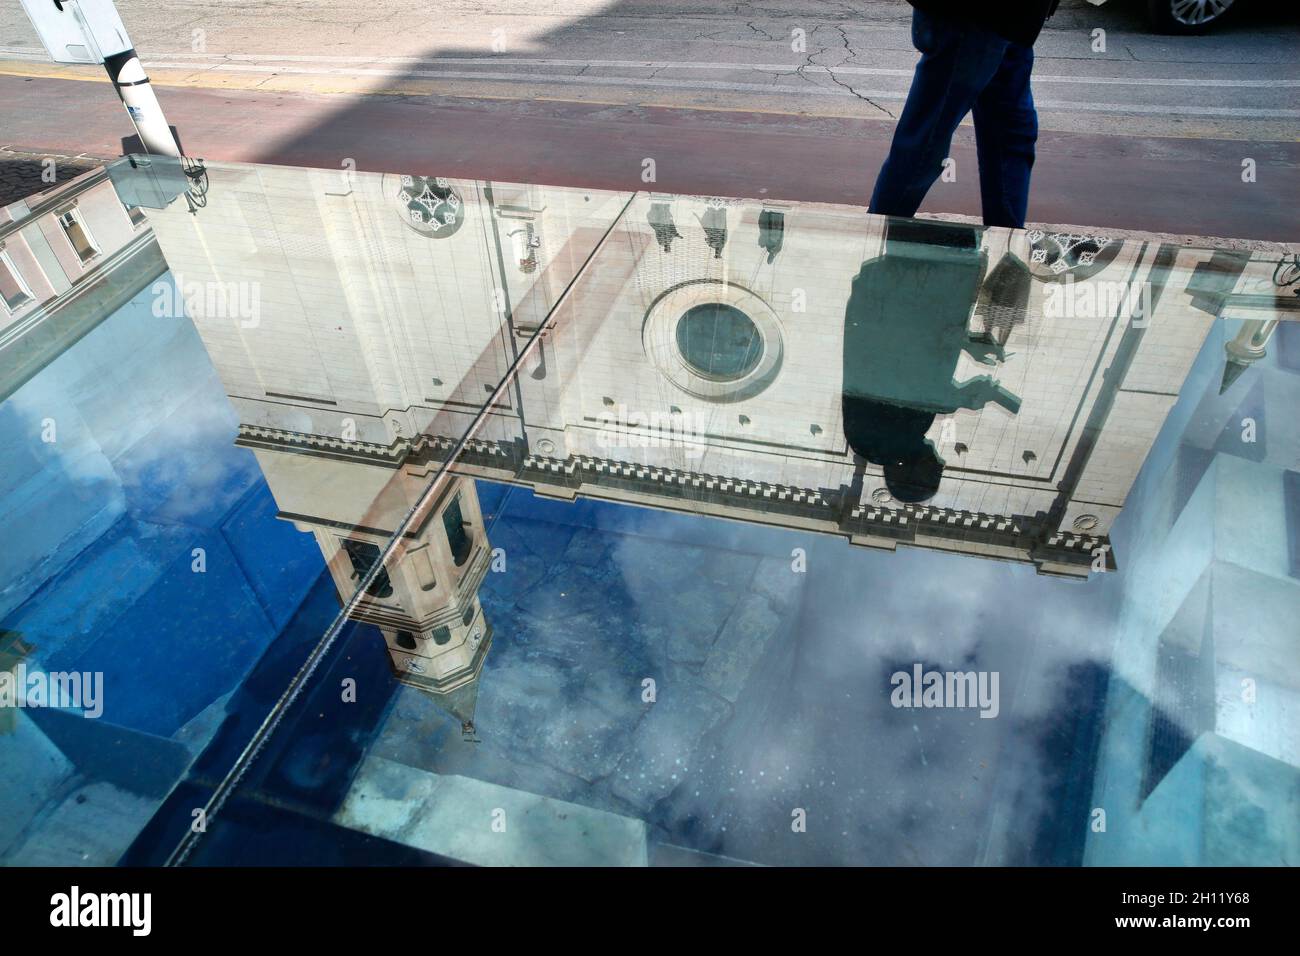 Pescara, Abruzzo, Italia. Un pedone passa davanti a un'area panoramica in vetro che mostra la base di una colonna storica fuori dalla Cattedrale di San Cetteo. Foto Stock